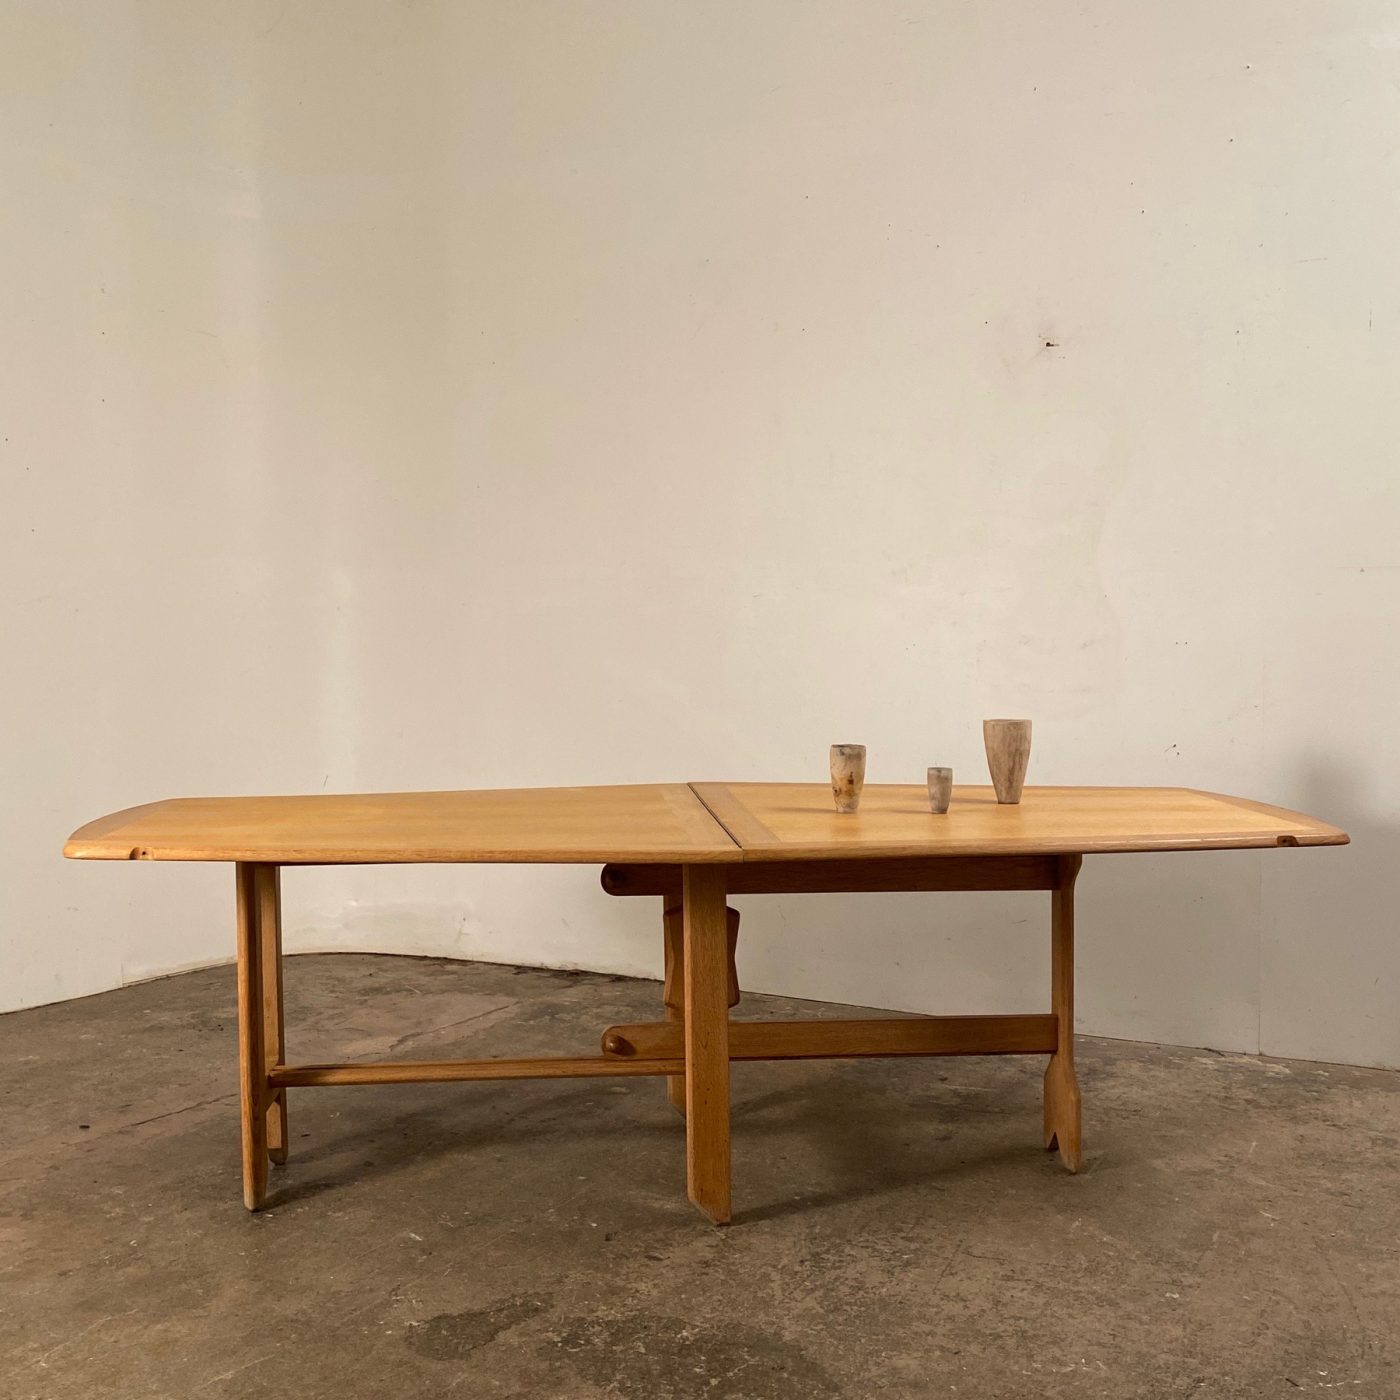 objet-vagabond-midcentury-table0007